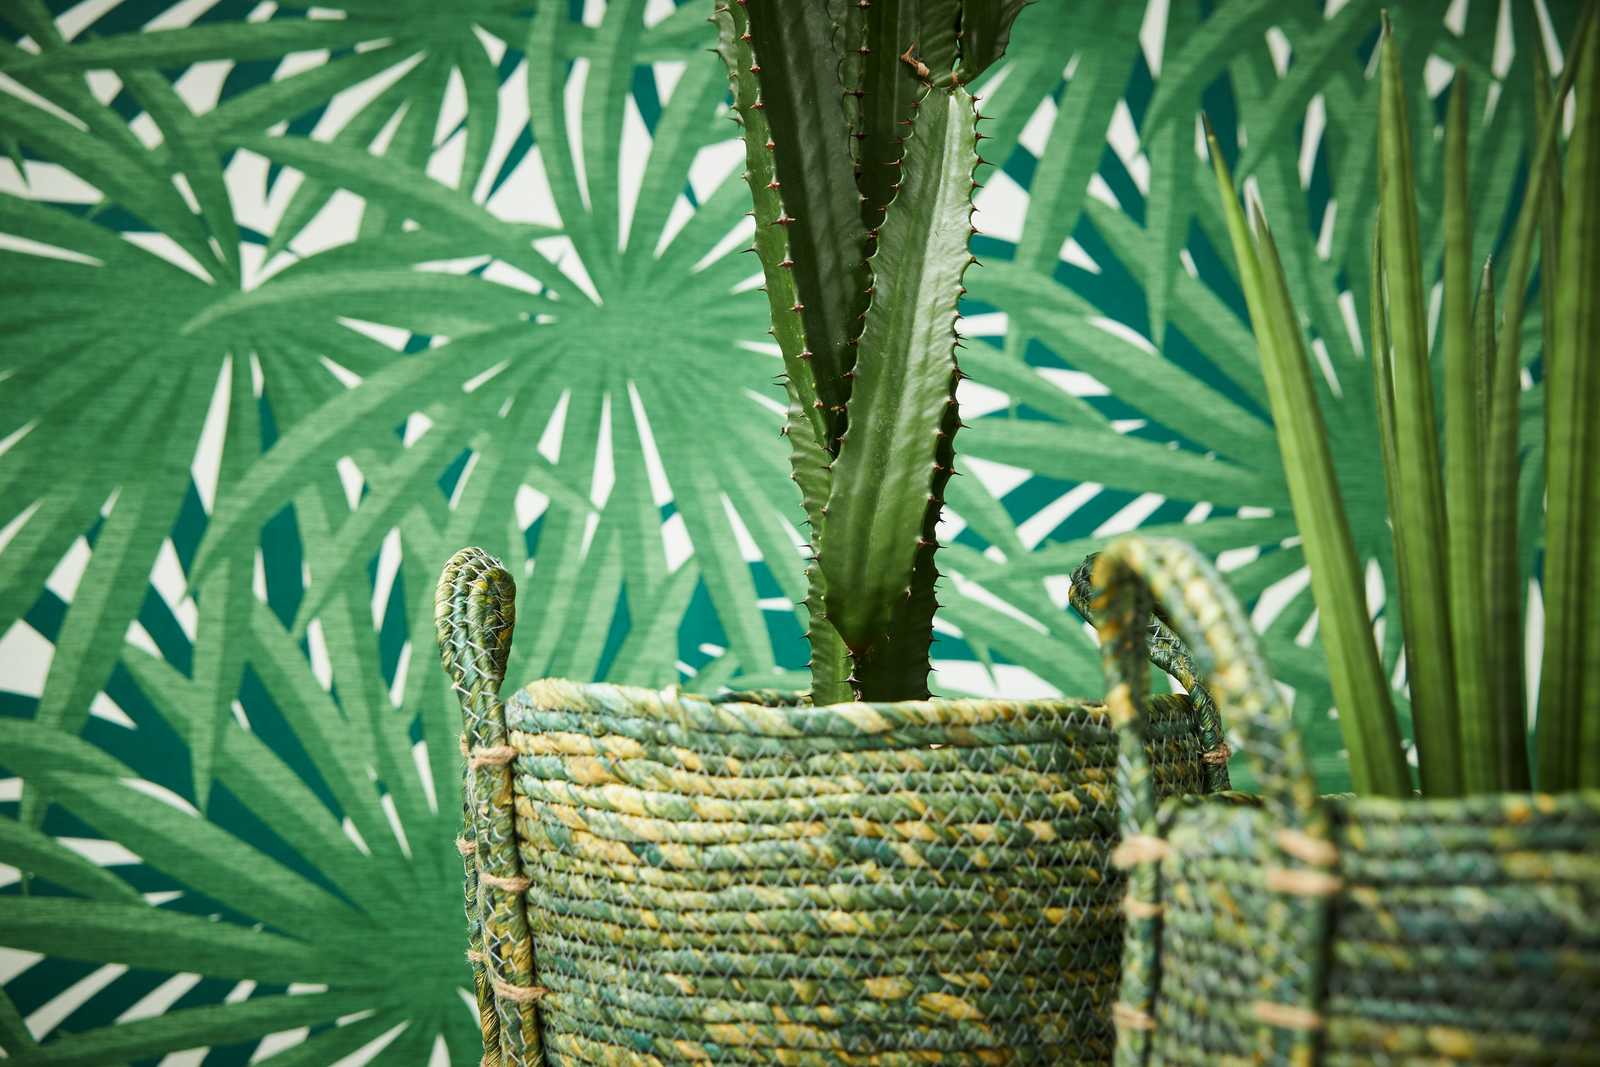             Carta da parati tropicale con disegno della giungla e lucentezza metallica - verde, metallica, bianca
        